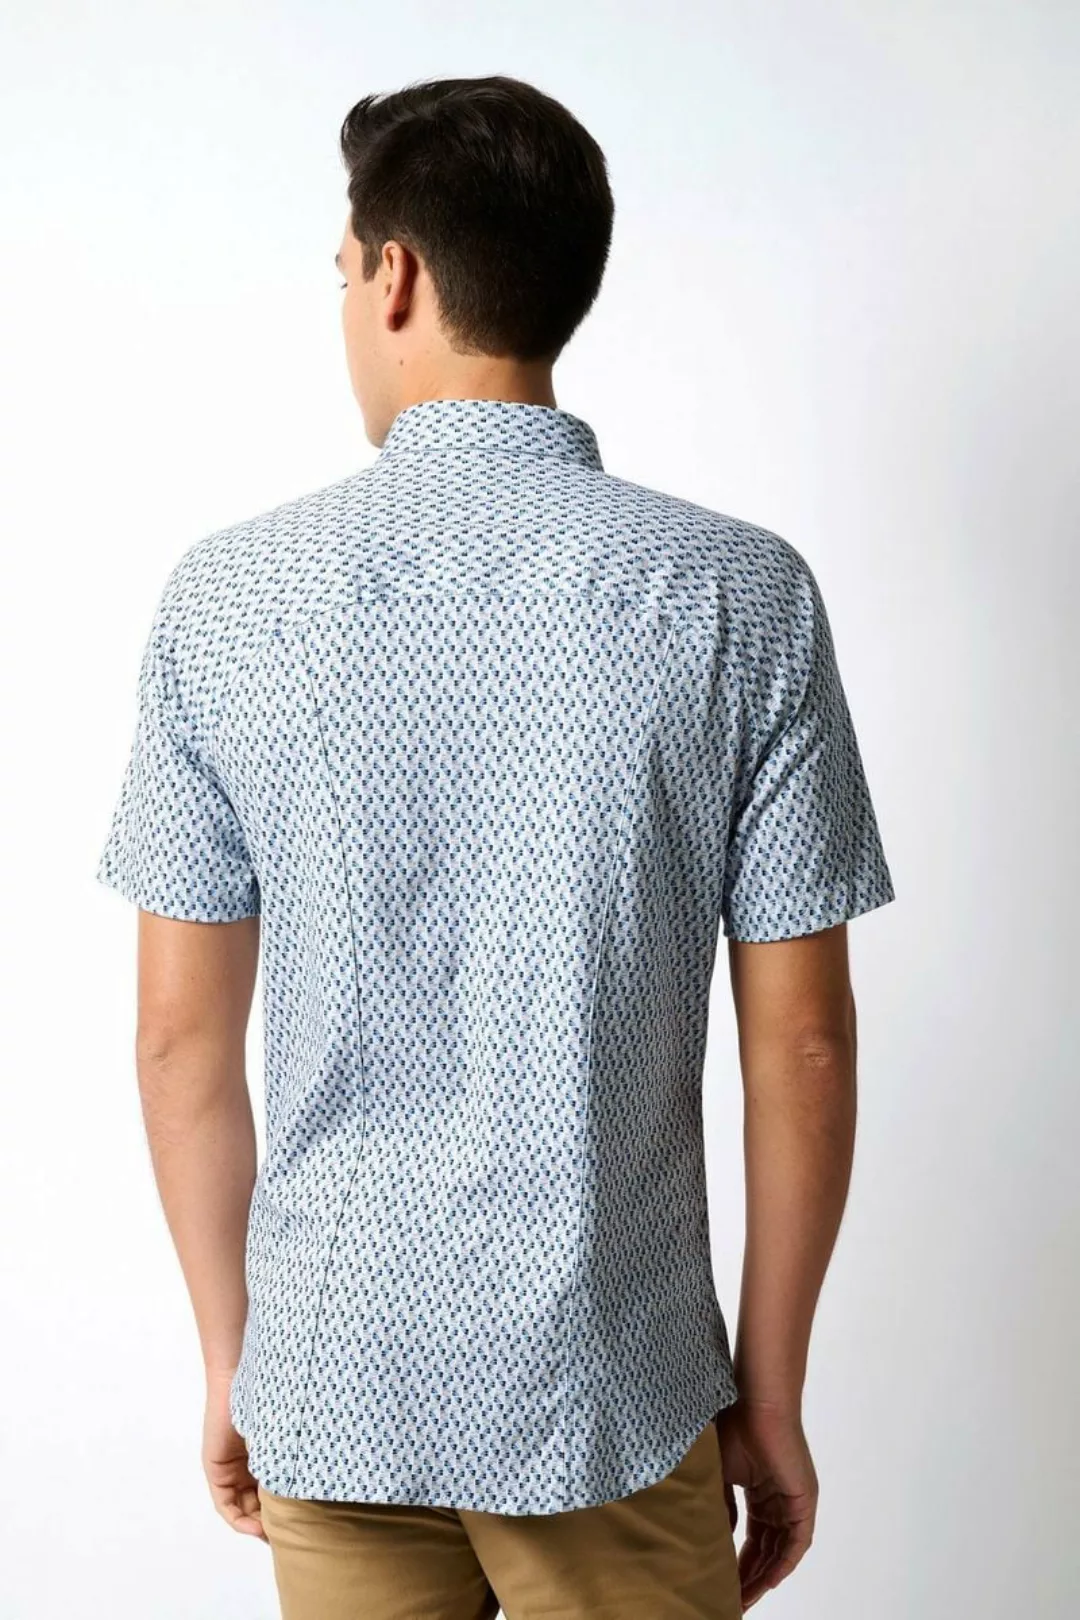 Desoto Short Sleeve Jersey Hemd Druck Blau - Größe M günstig online kaufen